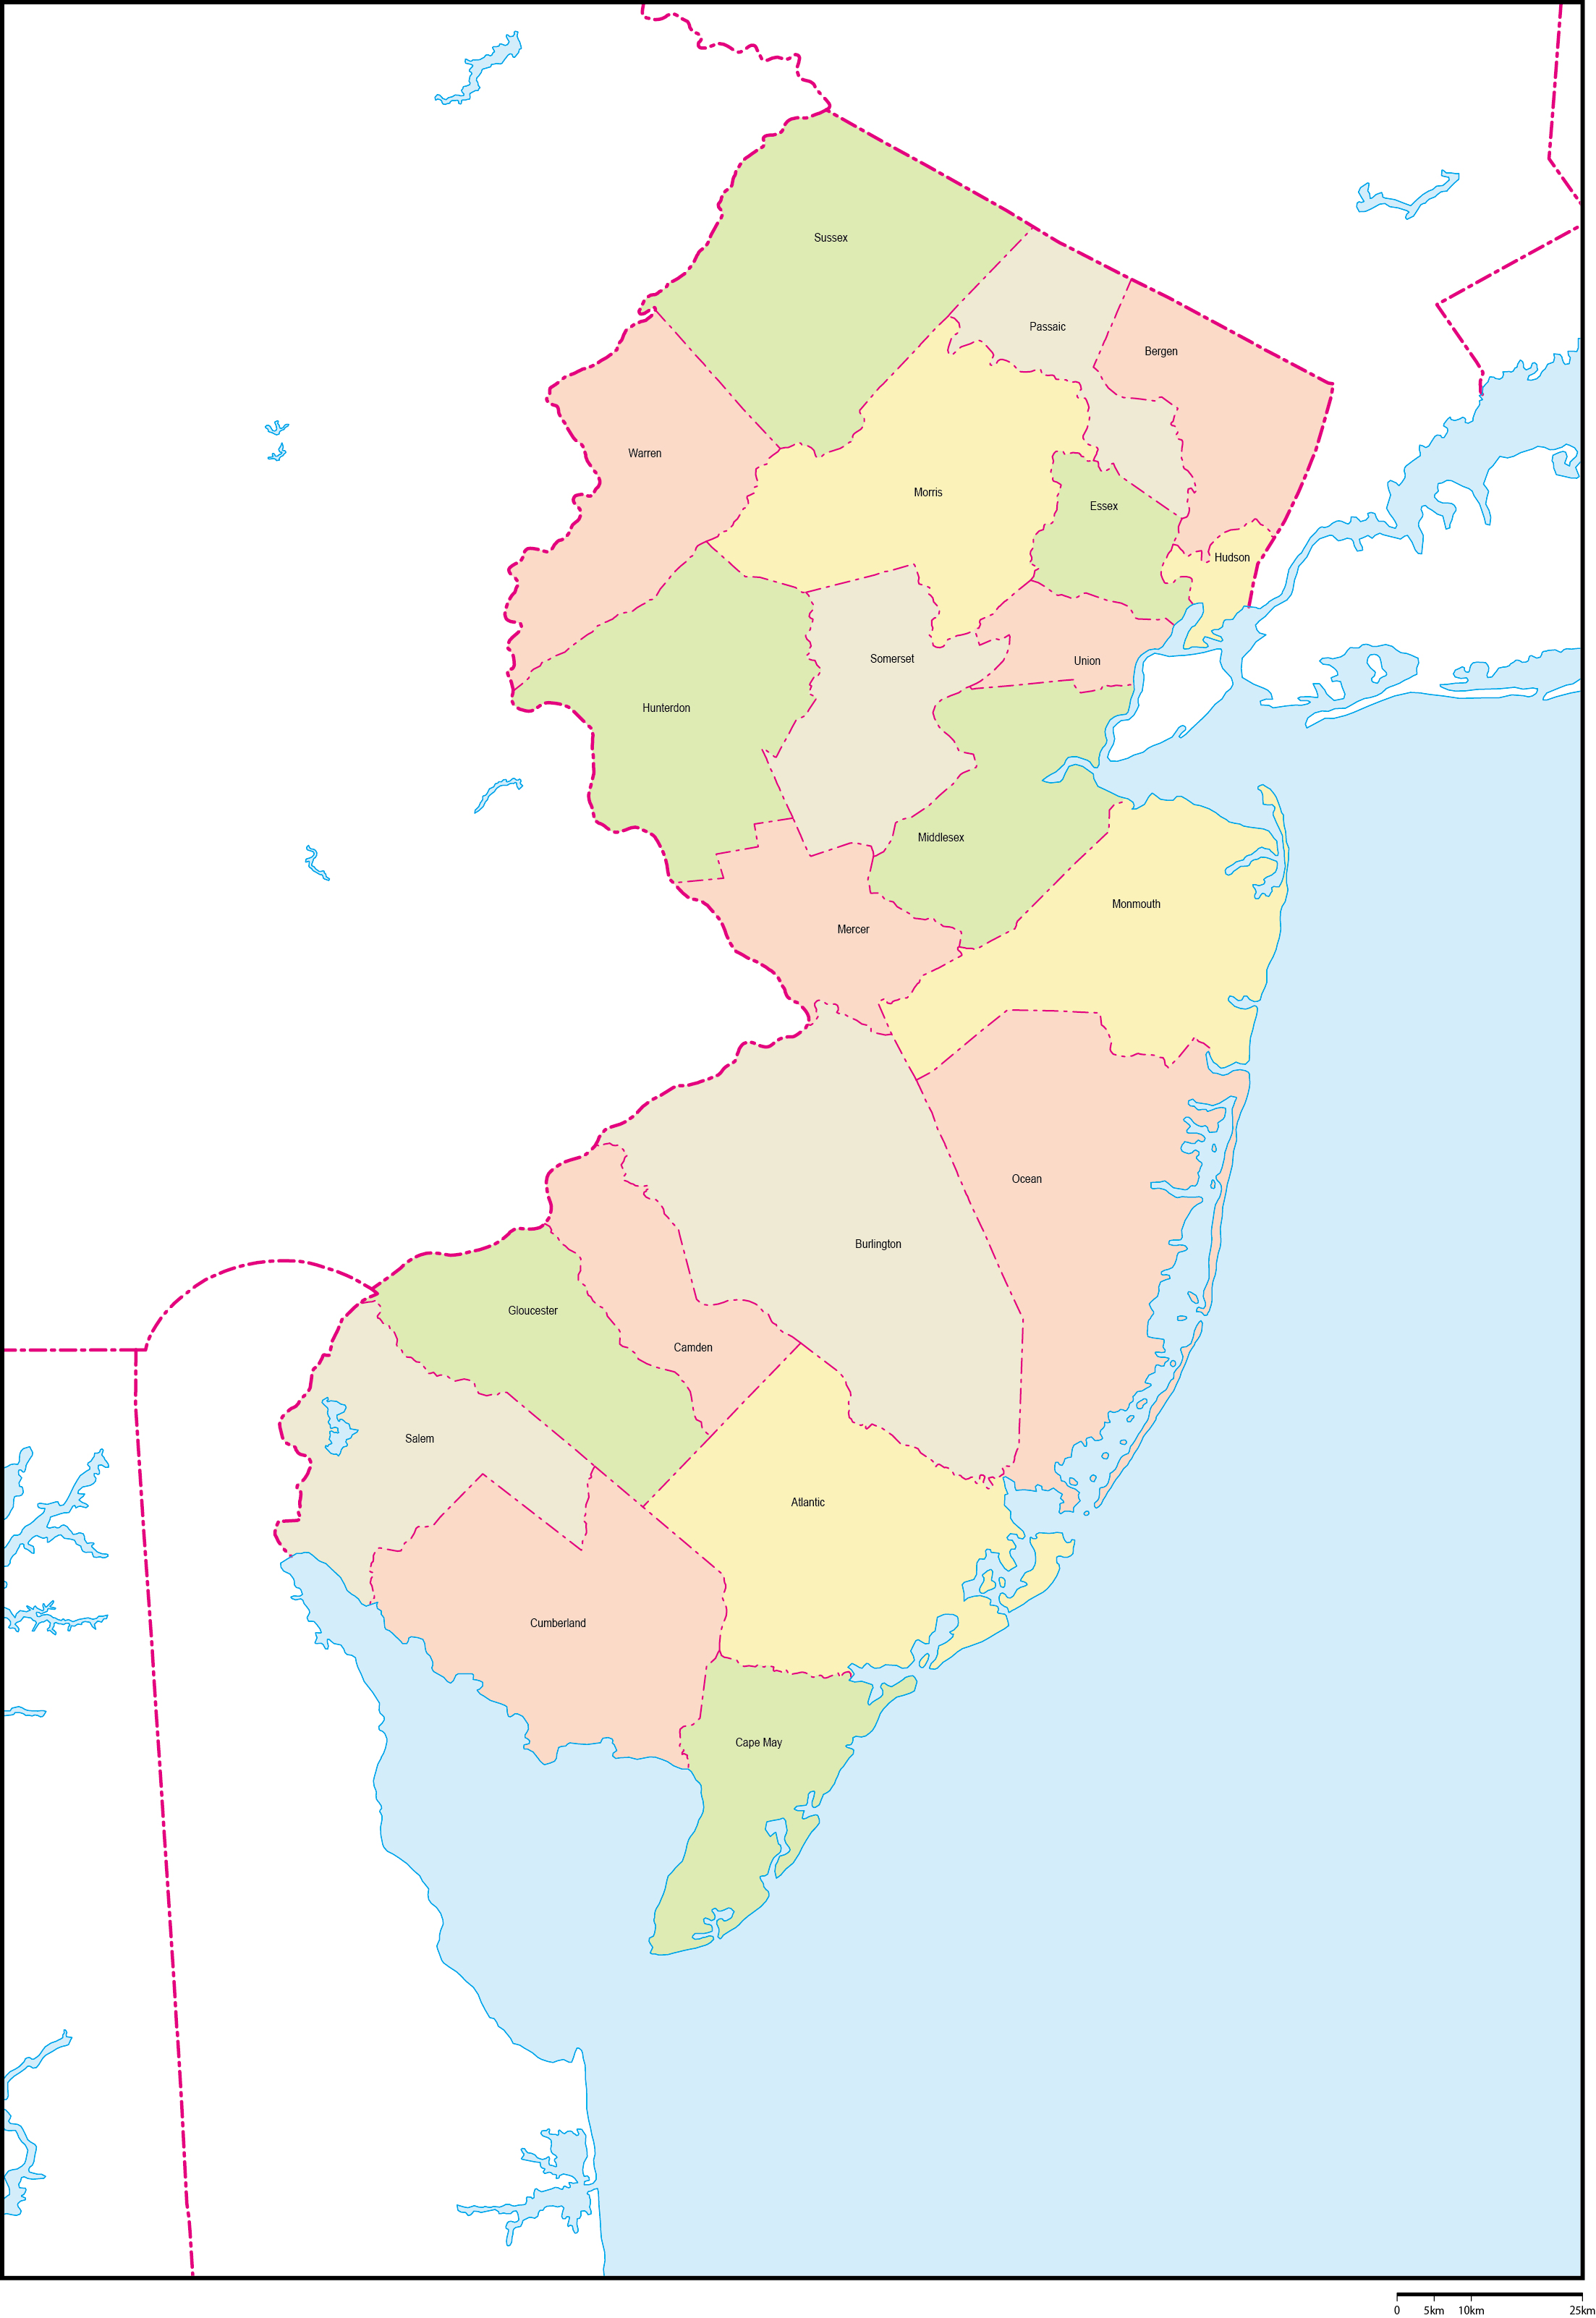 ニュージャージー州郡色分け地図郡名あり(英語)フリーデータの画像